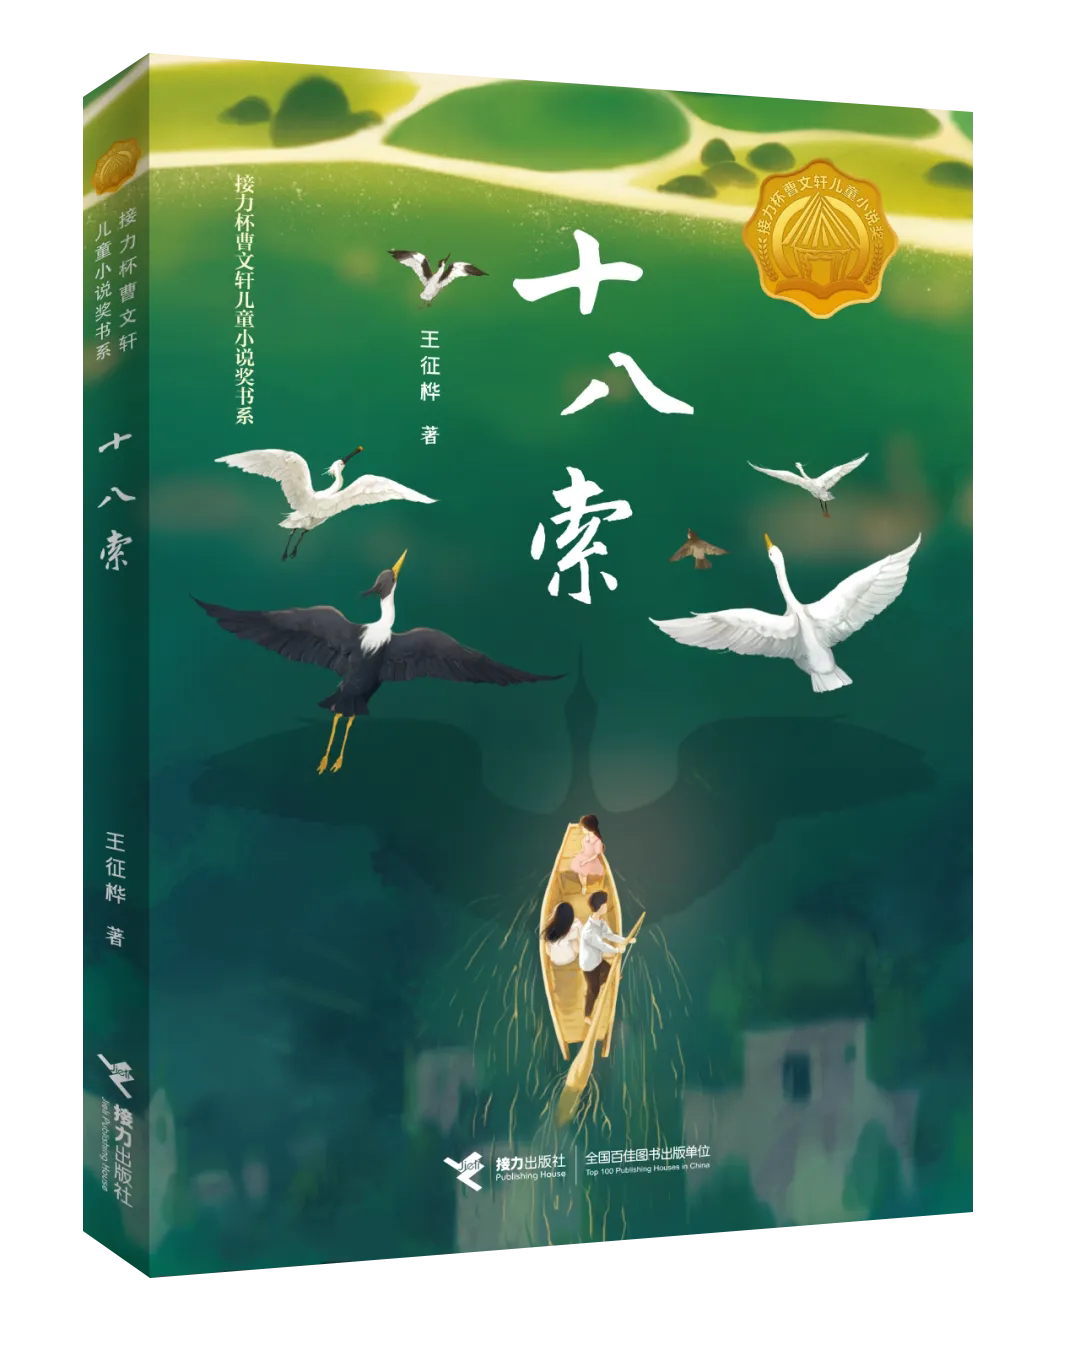 新书发布 | 作家王征桦长篇儿童小说《十八索》出版发行